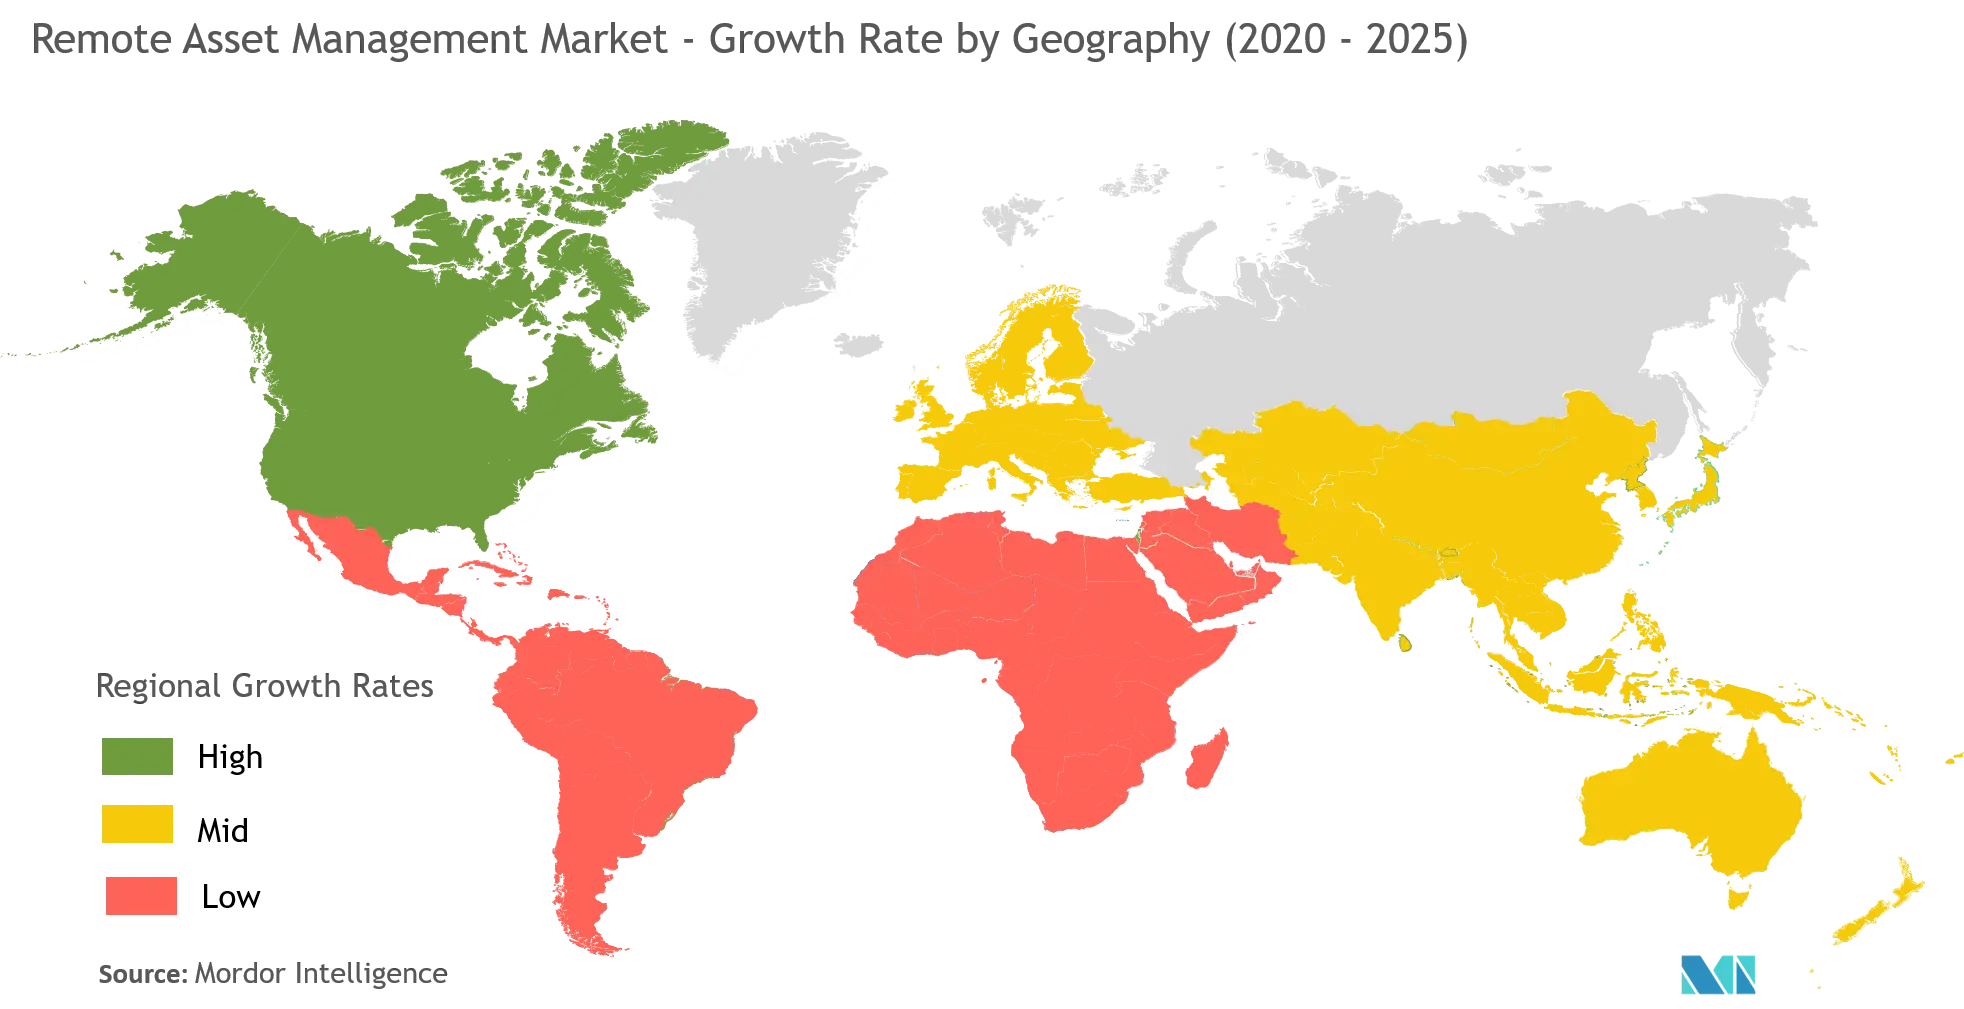 Mercado Gestão remota de ativos taxa de crescimento por geografia (2020-2025)